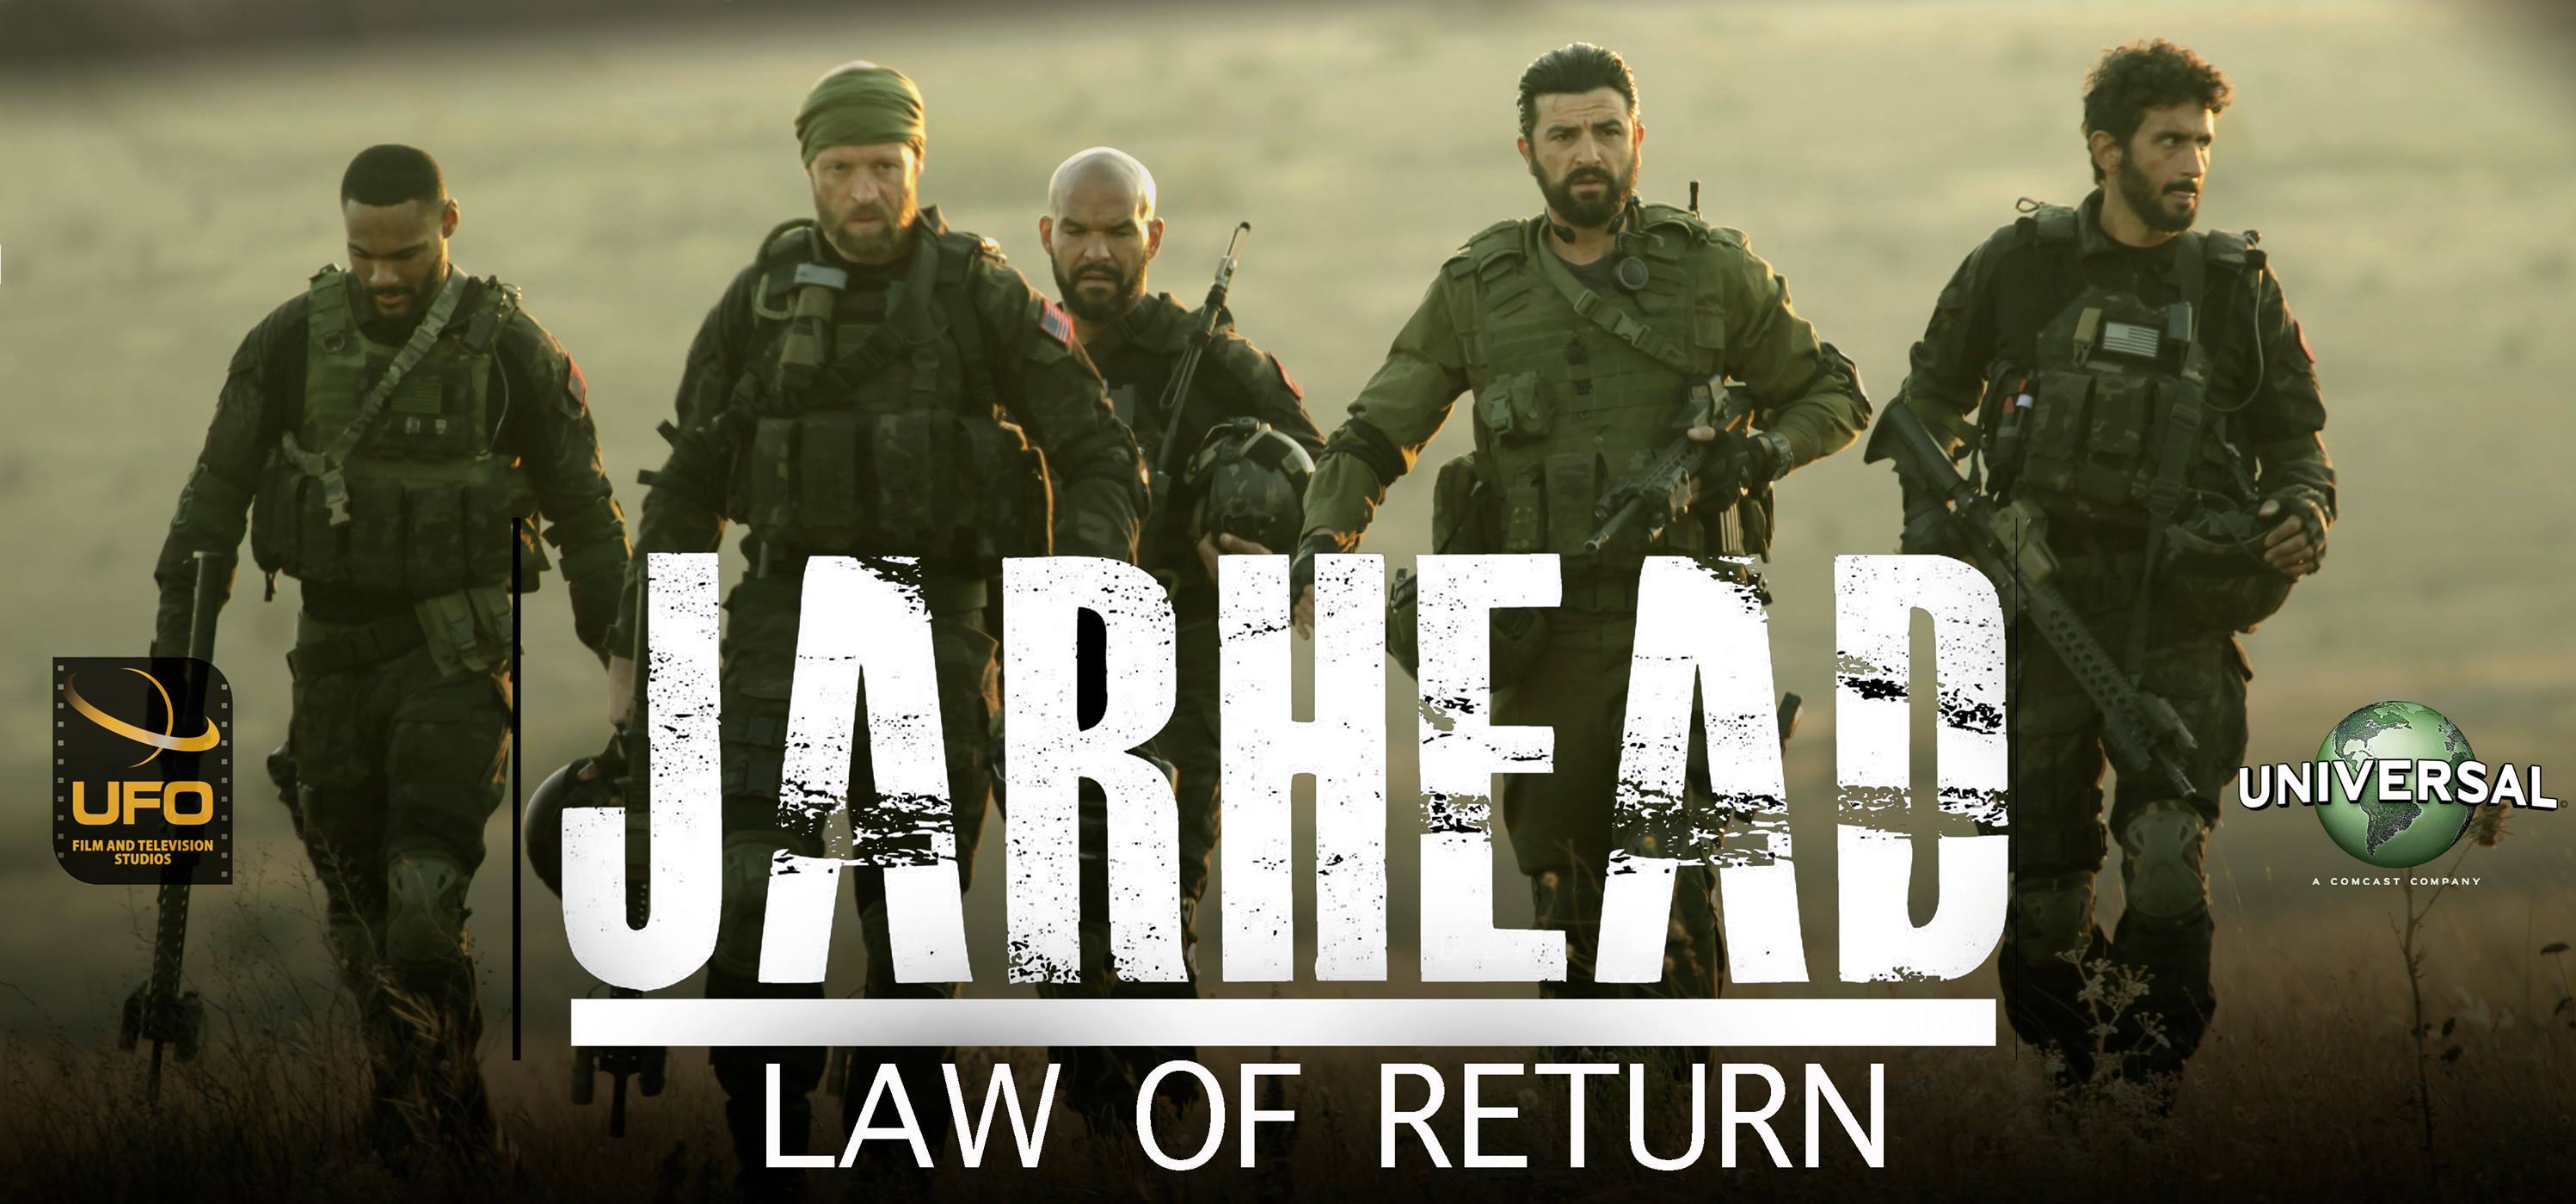 Watch Jarhead: Law of Return